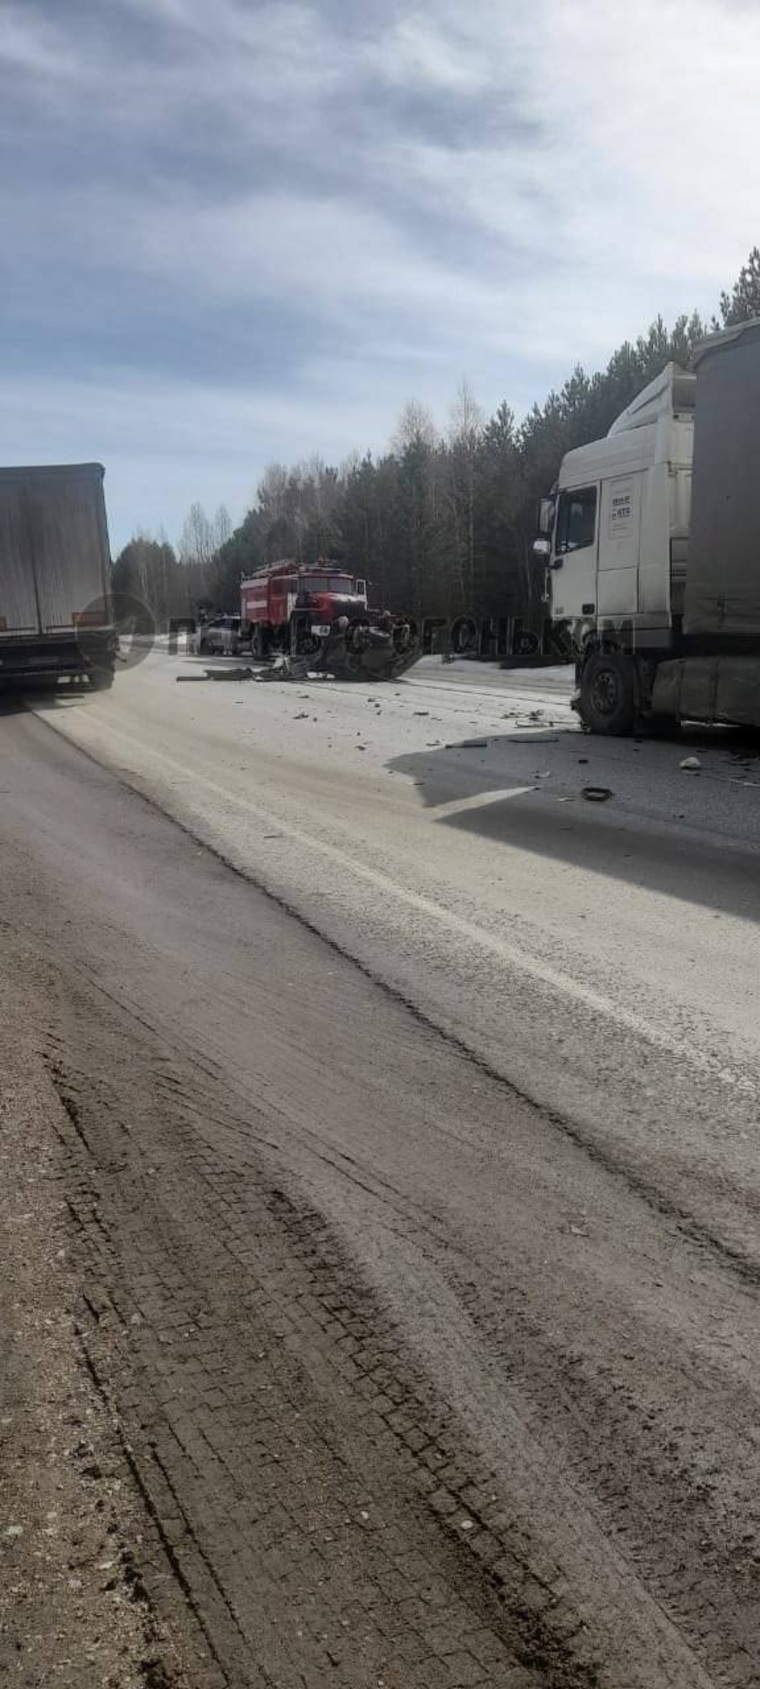 Инцидент произошел в районе 173-го км автодороги Пермь — Екатеринбург